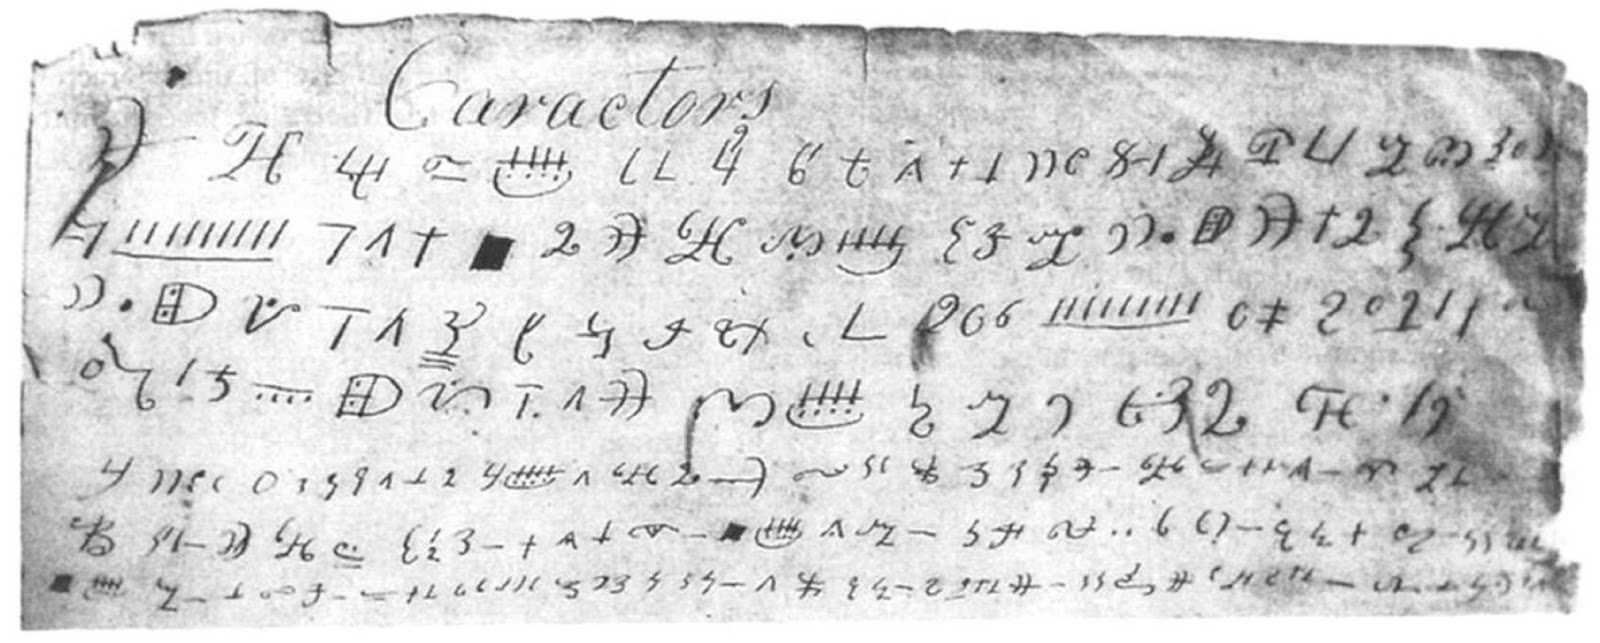 professor anthon manuscript